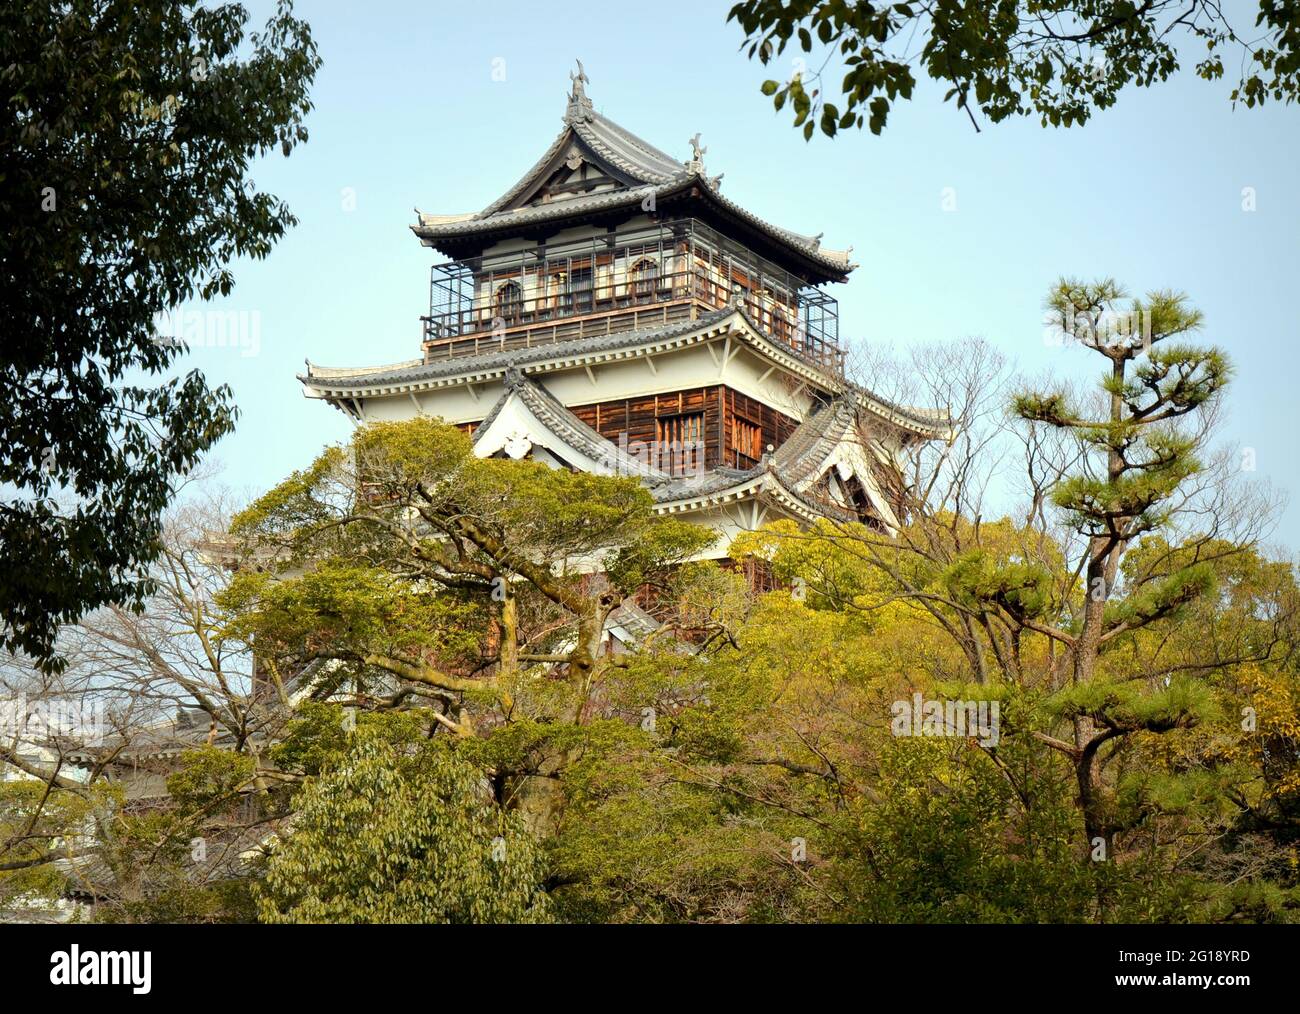 Die Burg von Hiroshima wurde in den 1590er Jahren erbaut, aber durch den Atombombenangriff am 1945 zerstört. Es wurde 1958 wieder aufgebaut, eine Nachbildung des Originals. Stockfoto